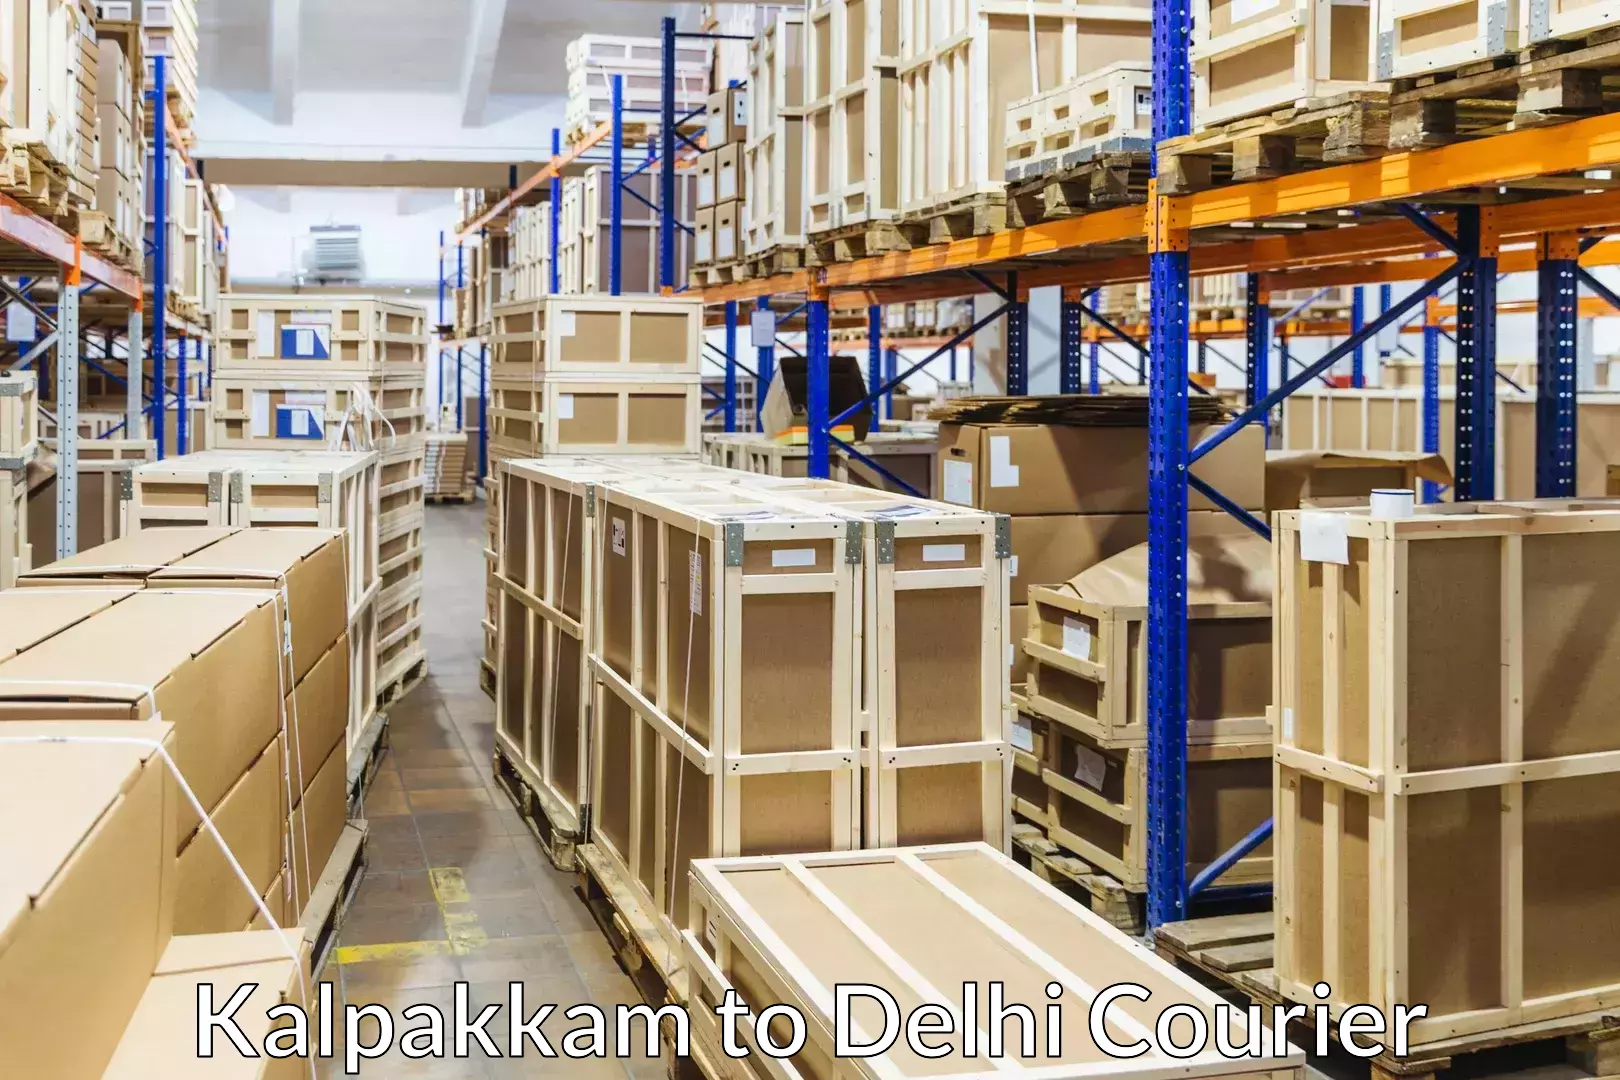 Furniture transport and storage Kalpakkam to Lodhi Road